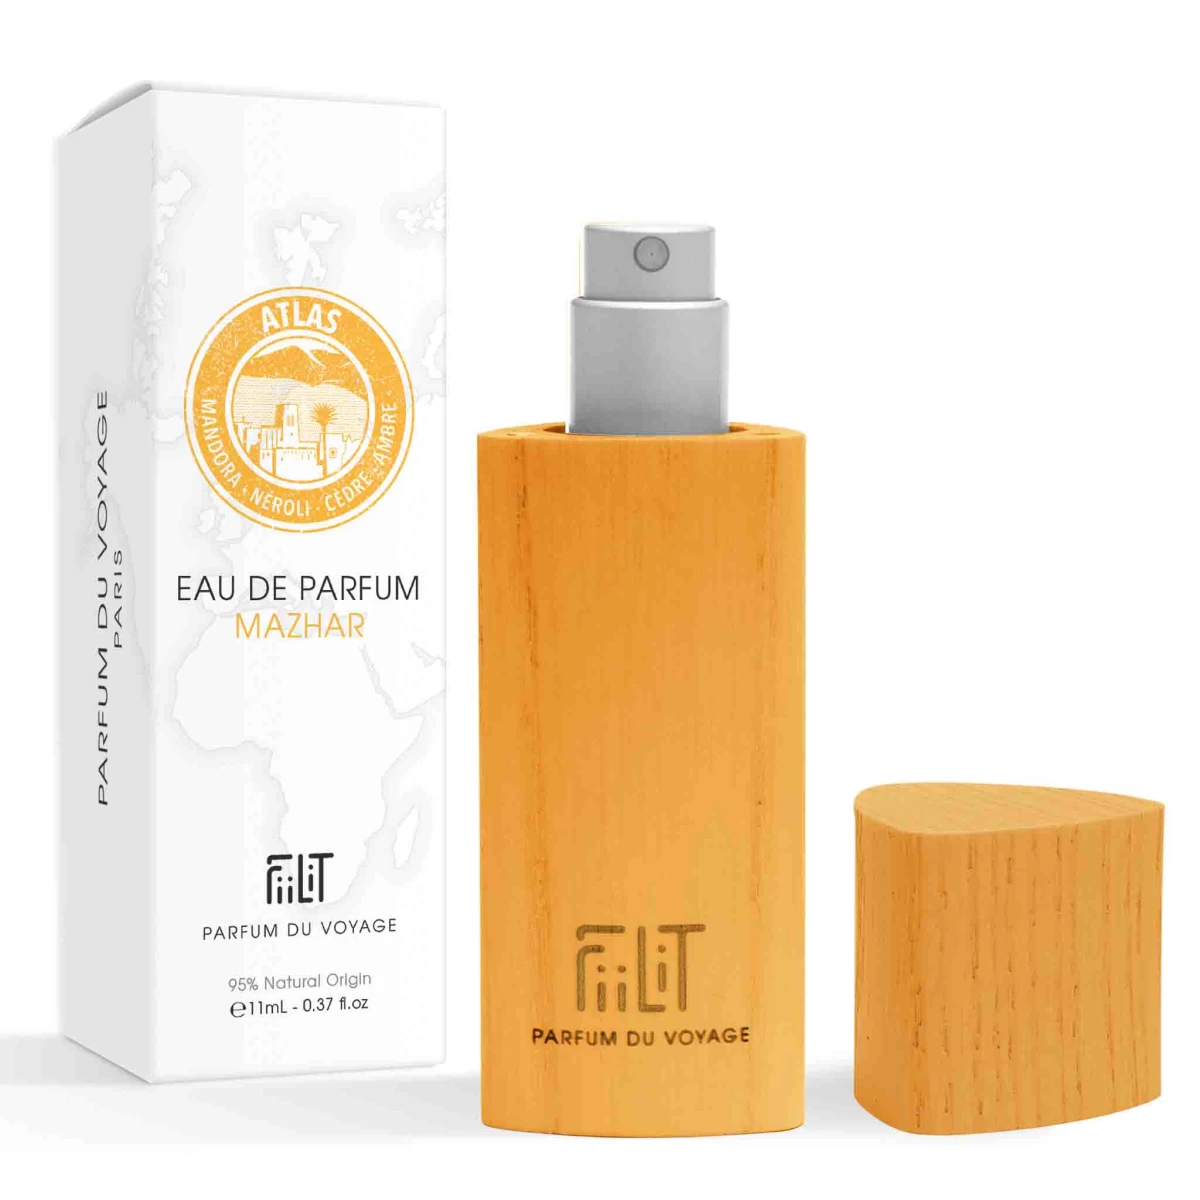 detailed_9_eau-de-parfum-11ml-bois-mazhar-atlas-fiilit-parfum-du-voyage-naturel.webp